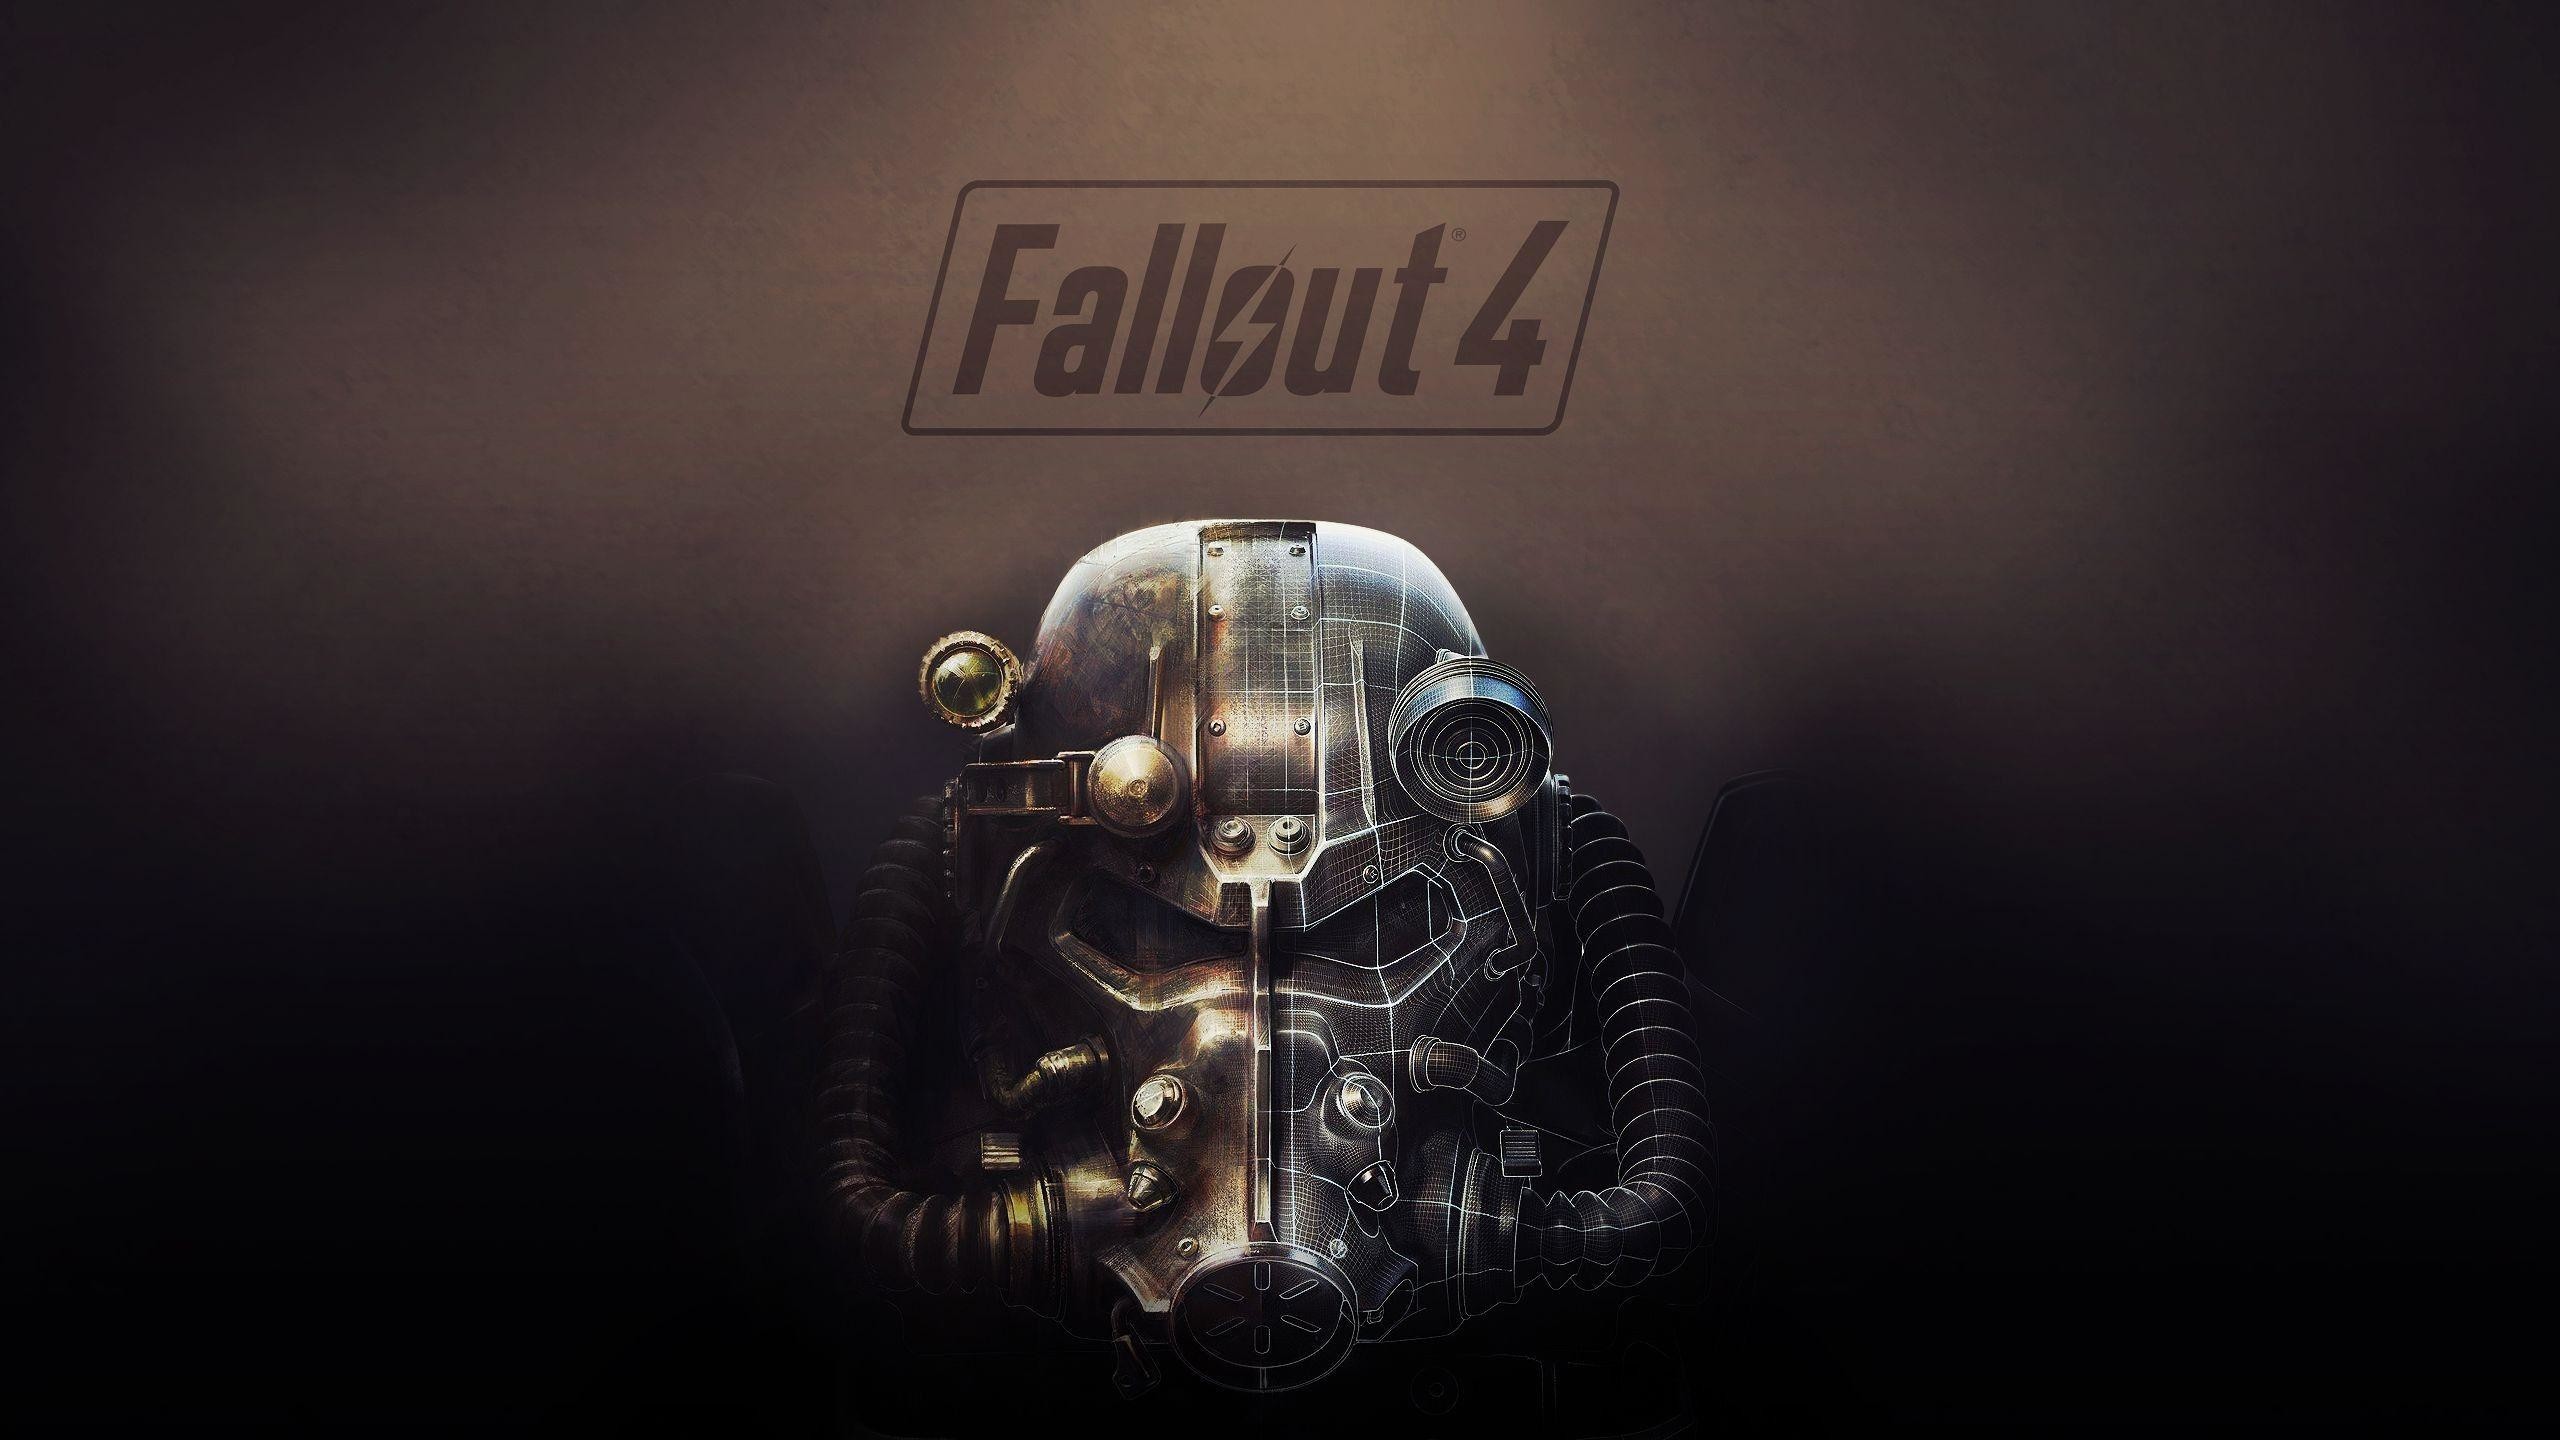 78 Fallout 4 Wallpaper 2560 1440